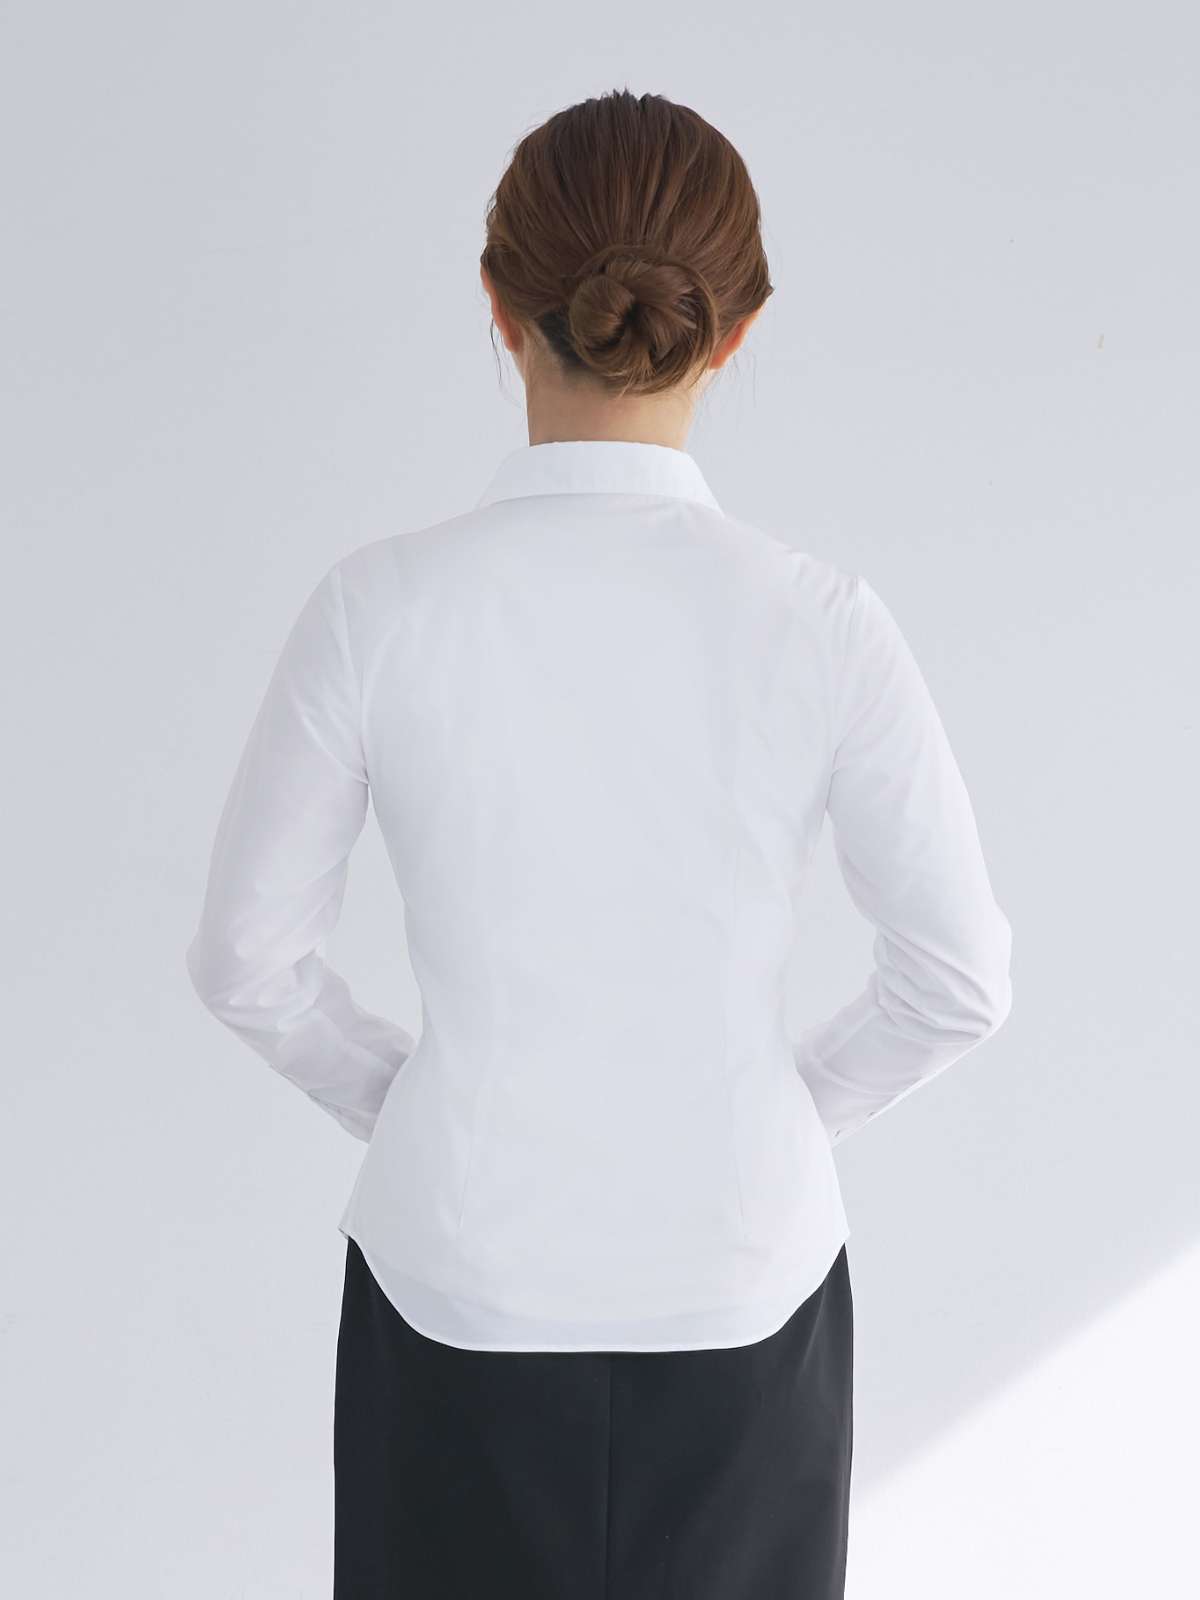 プレミアムストレッチ ホワイトシャツ：スキッパー24SS - overE/オーバーイー |胸が大きな女性のためのアパレルブランド